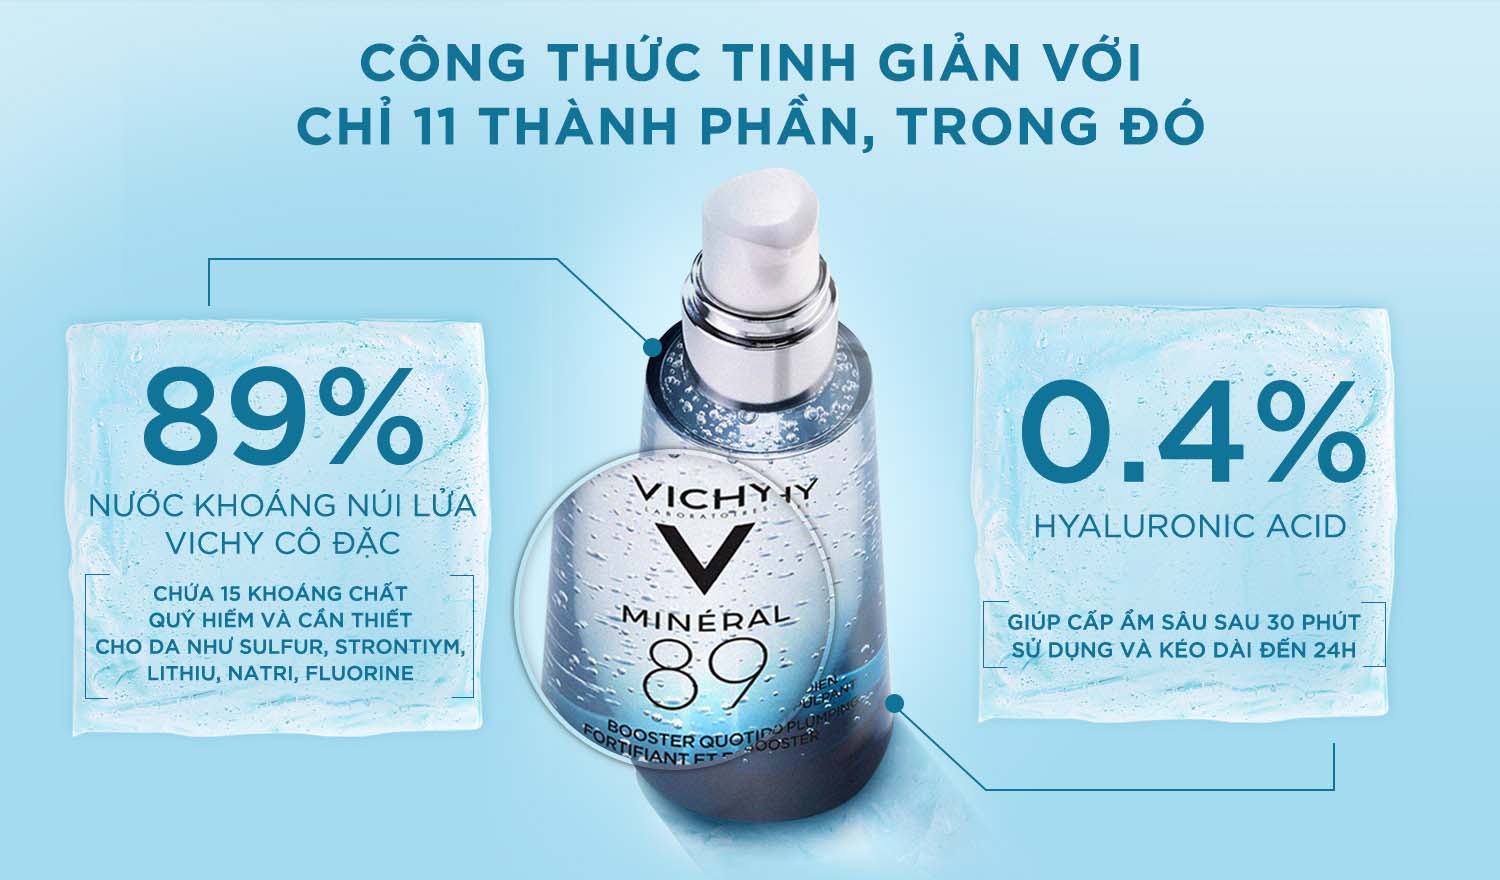 Dưỡng Chất Khoáng Cô Đặc Vichy Mineral 89 Serum dưỡng ẩm chuyên sâu cho da